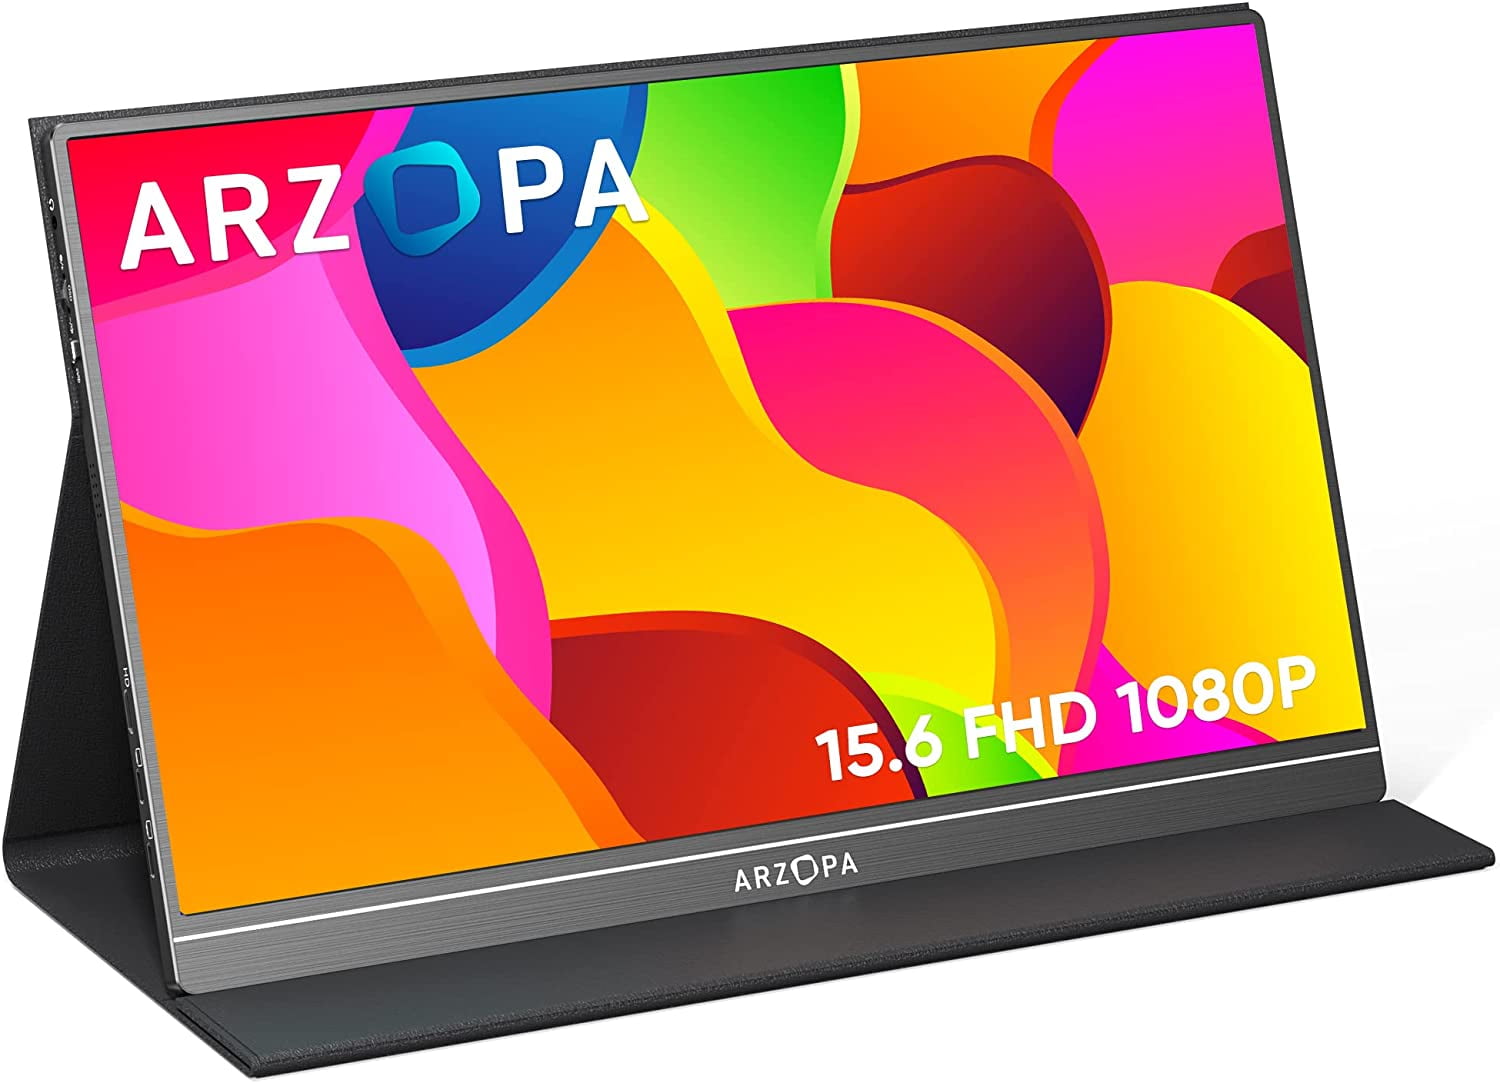 ARZOPA-Moniteur portable FHD 17.3 pouces, écran IPS 1080p externe, USB  Type-C, HDMI, moniteur de jeu pour PC, téléphone, Mac, Xbox, PS5, Switch -  AliExpress